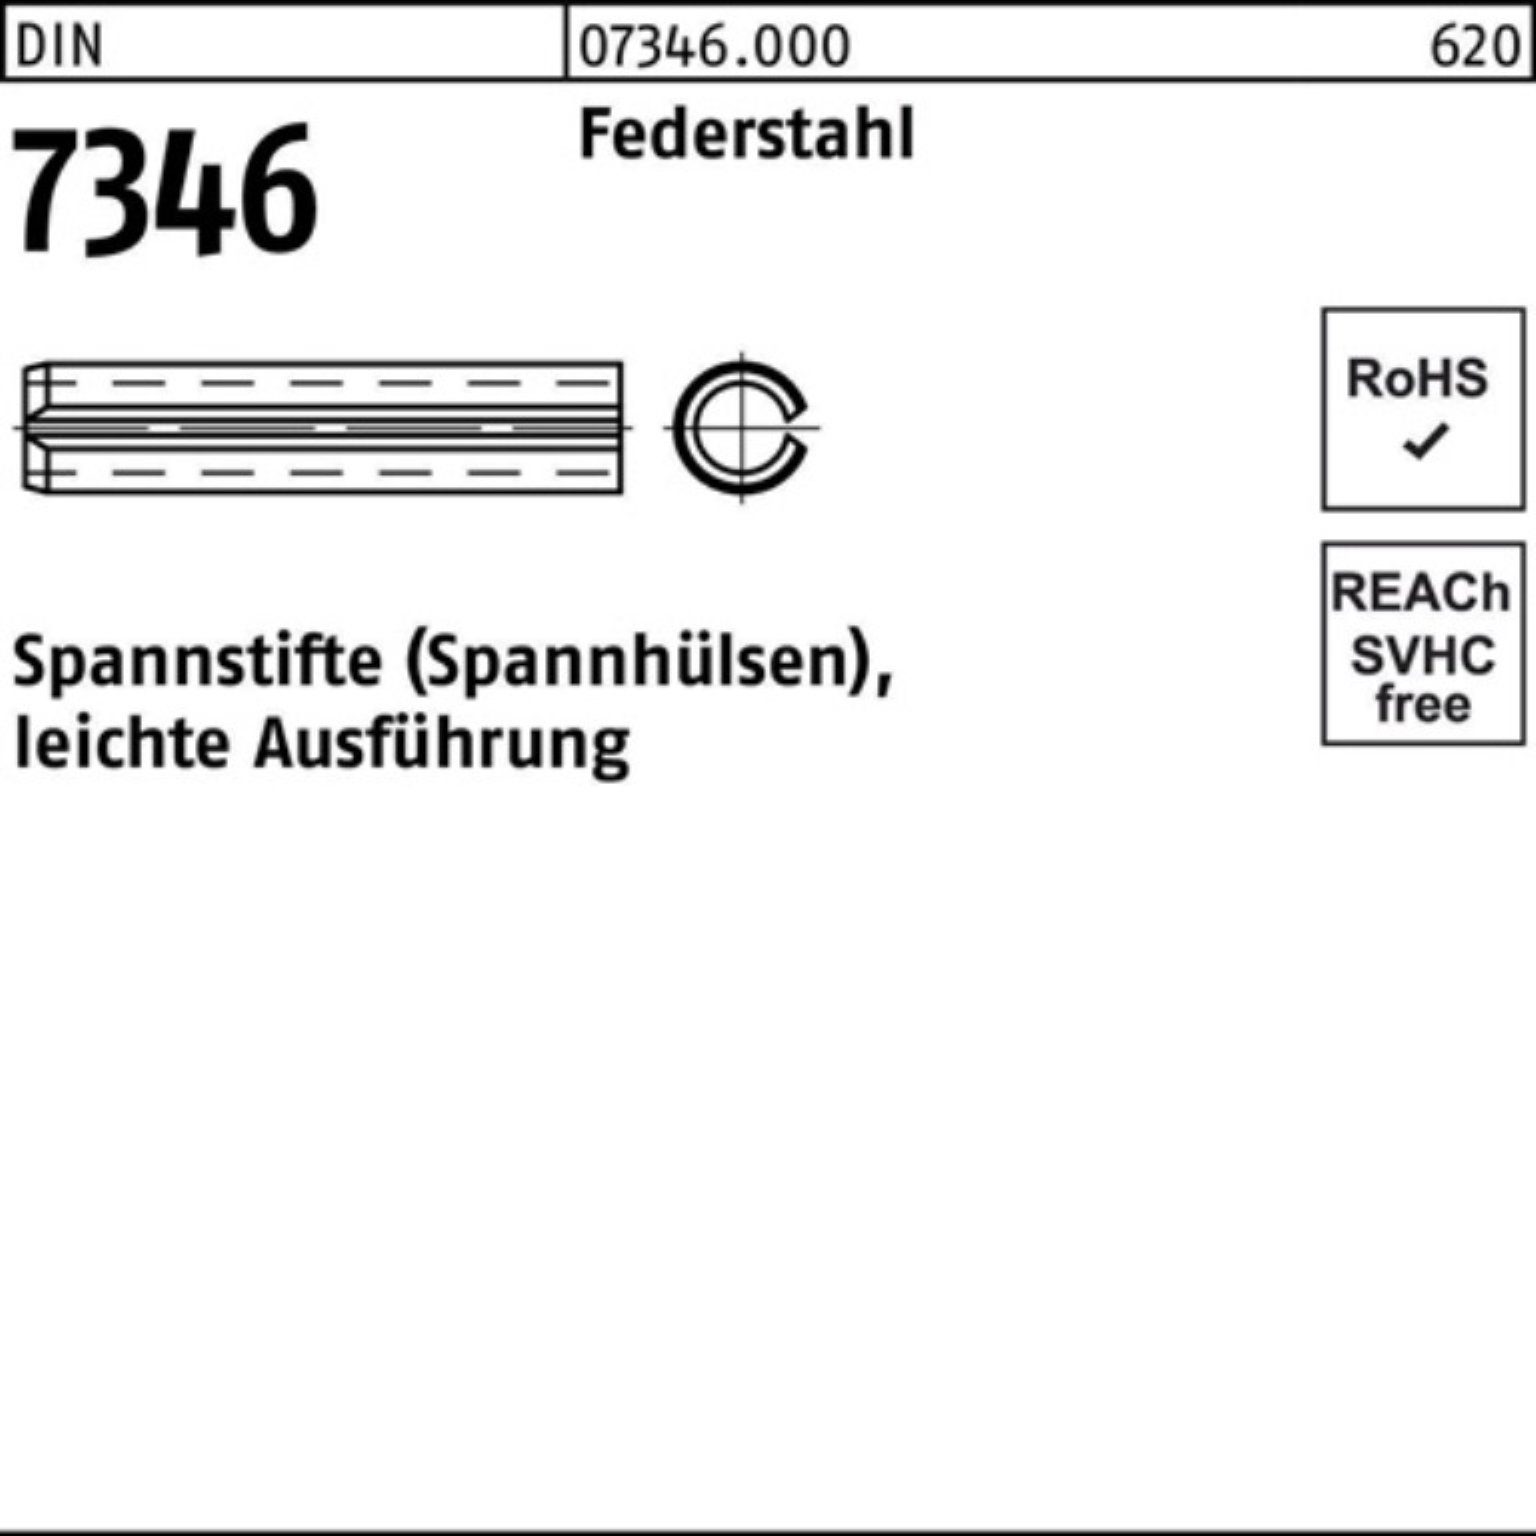 22 7346/ISO Reyher Spannstift 100er 13337 Spannstift Federstahl Pack DIN 13x Aus leichte